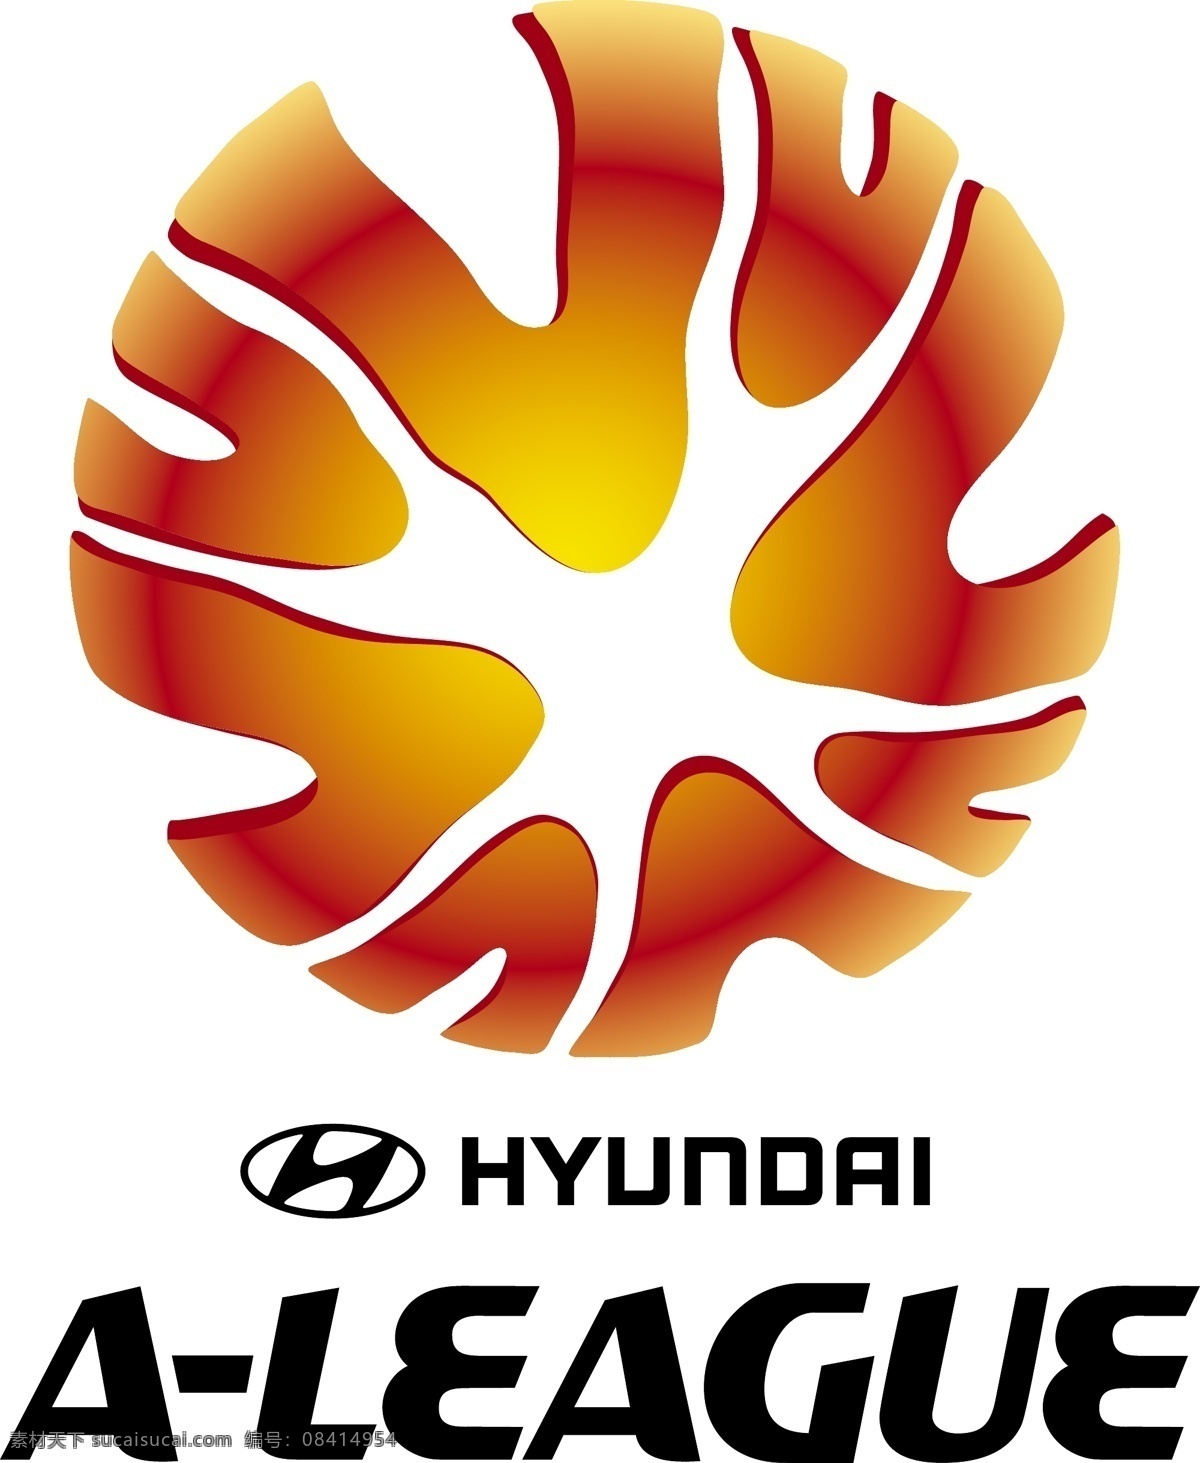 澳大利亚 职业 足球 联赛 logo设计 超级 澳超 亚足联 赛事徽标 矢量图